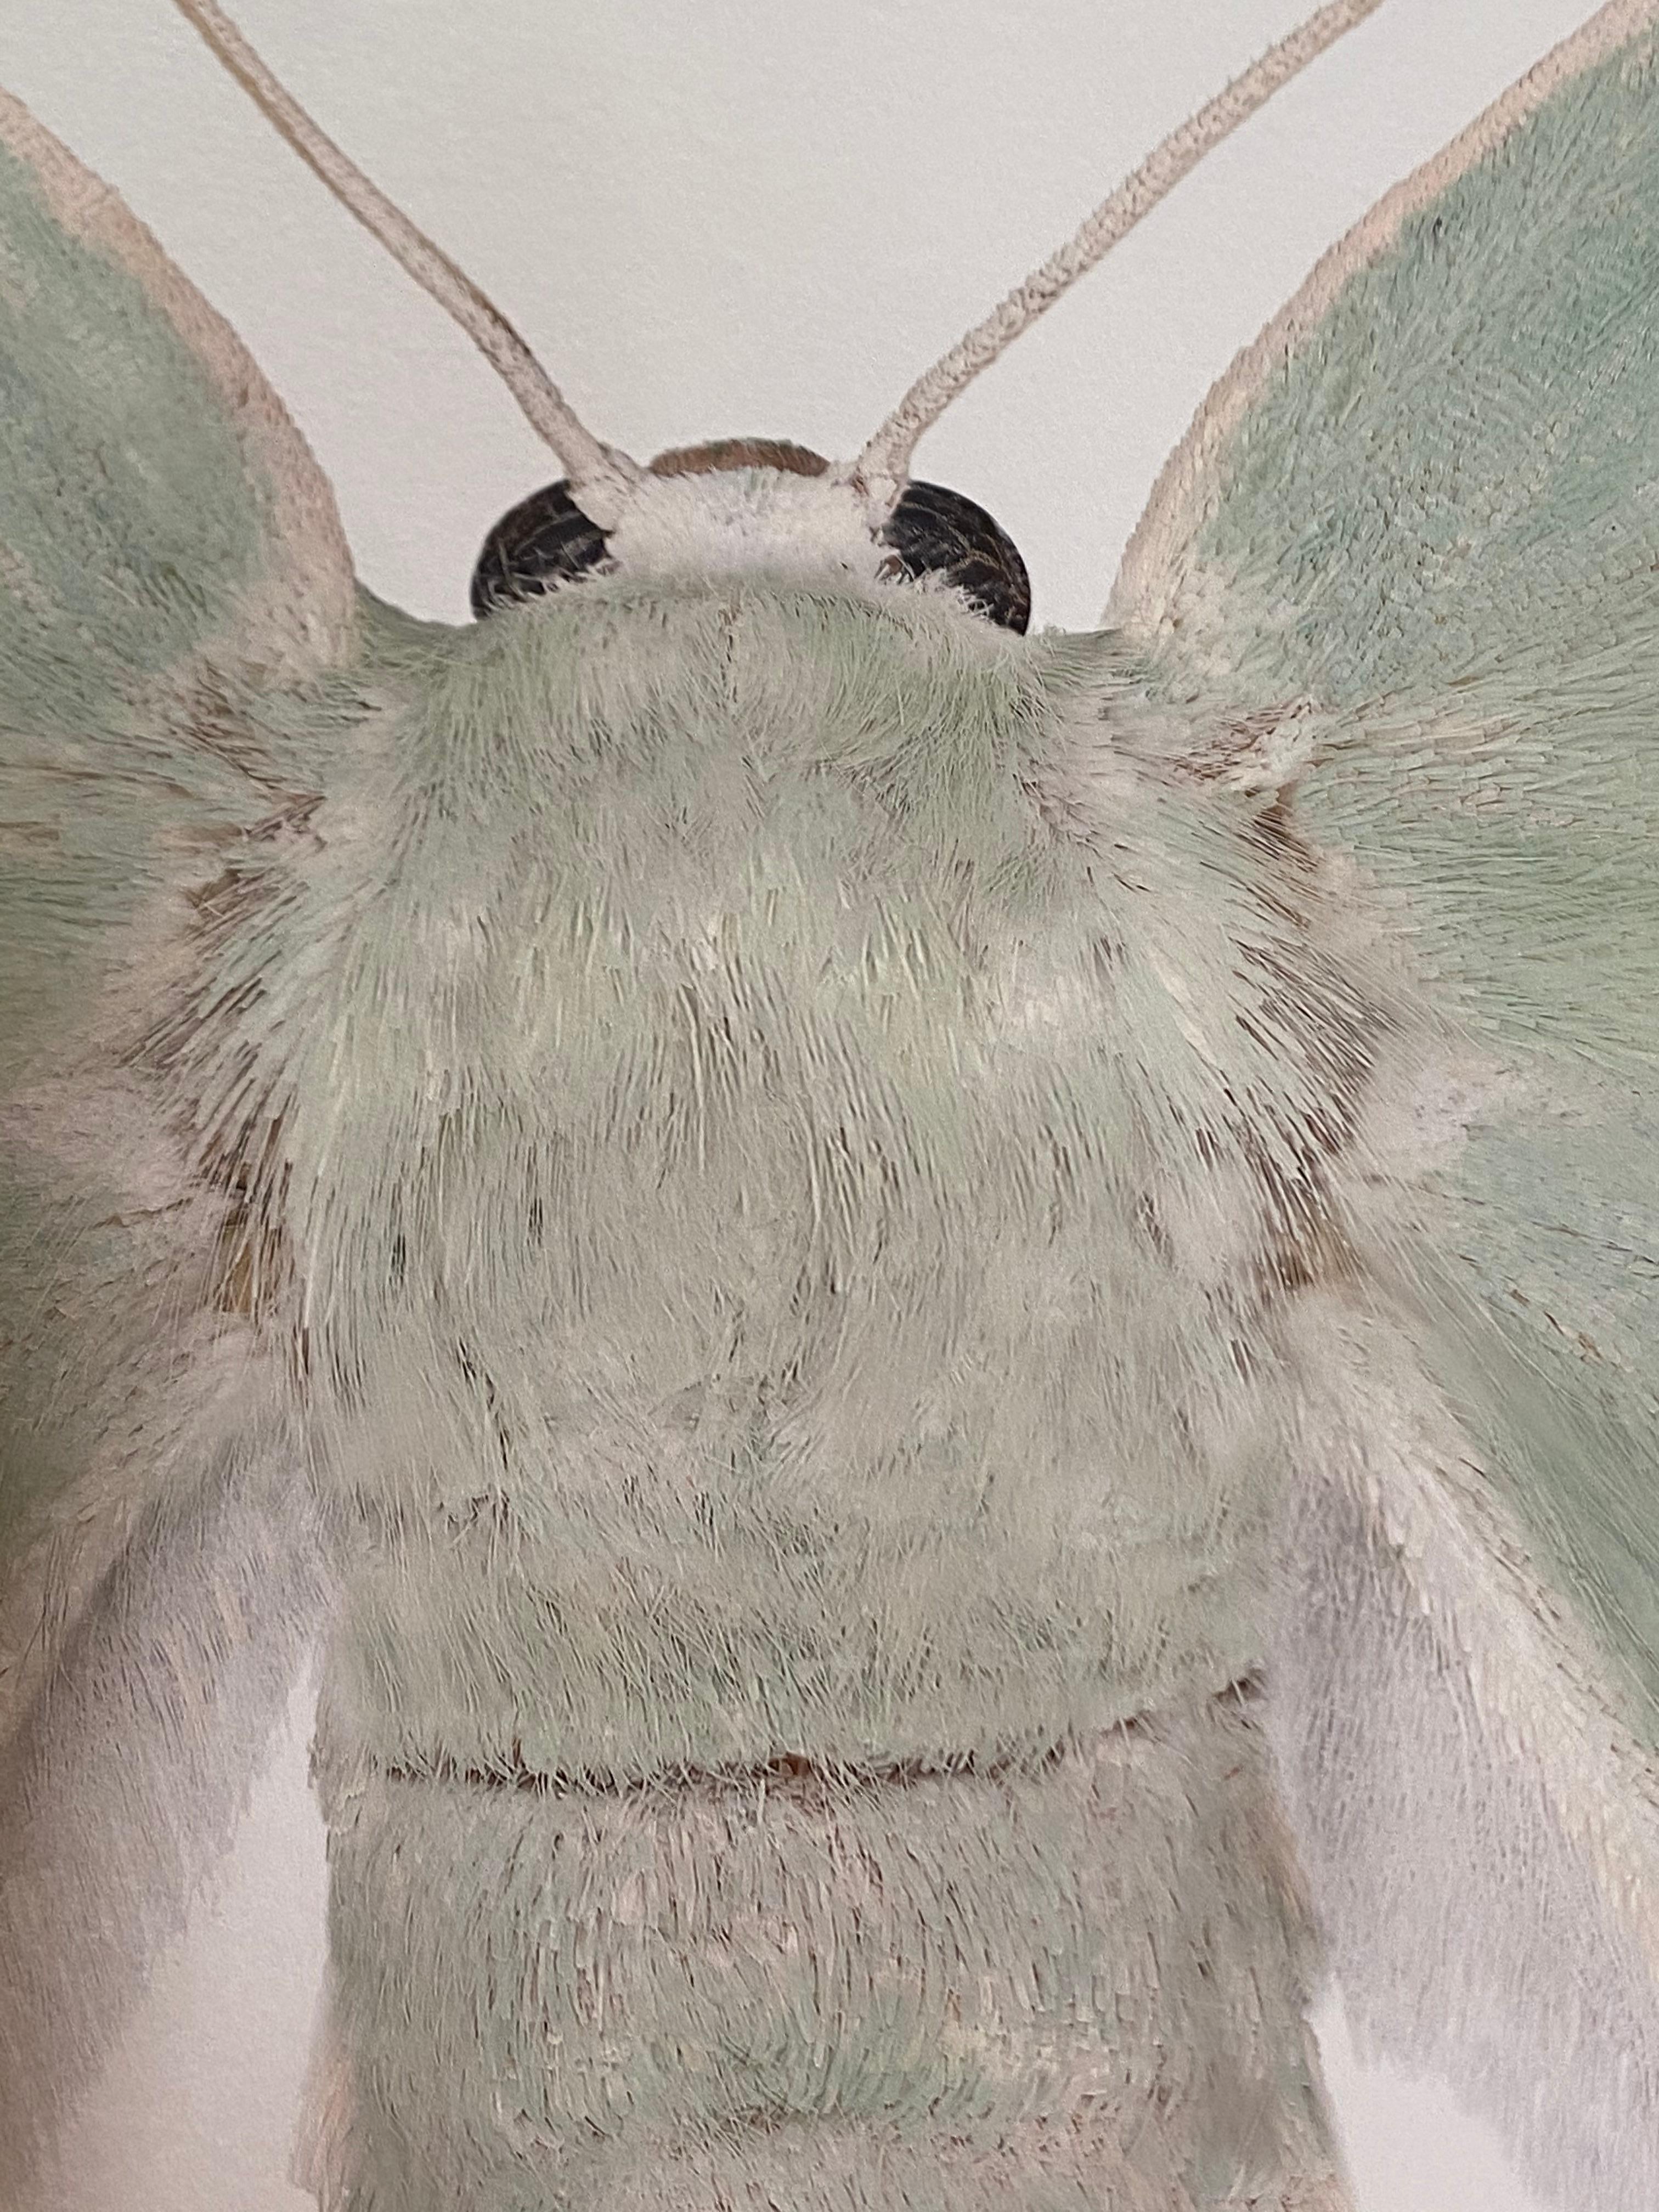 Geometra Glaucaria, Insektenfotografie, Hellgrnes, elfenbeinfarbenes Moth auf Wei (Weiß), Color Photograph, von Joseph Scheer